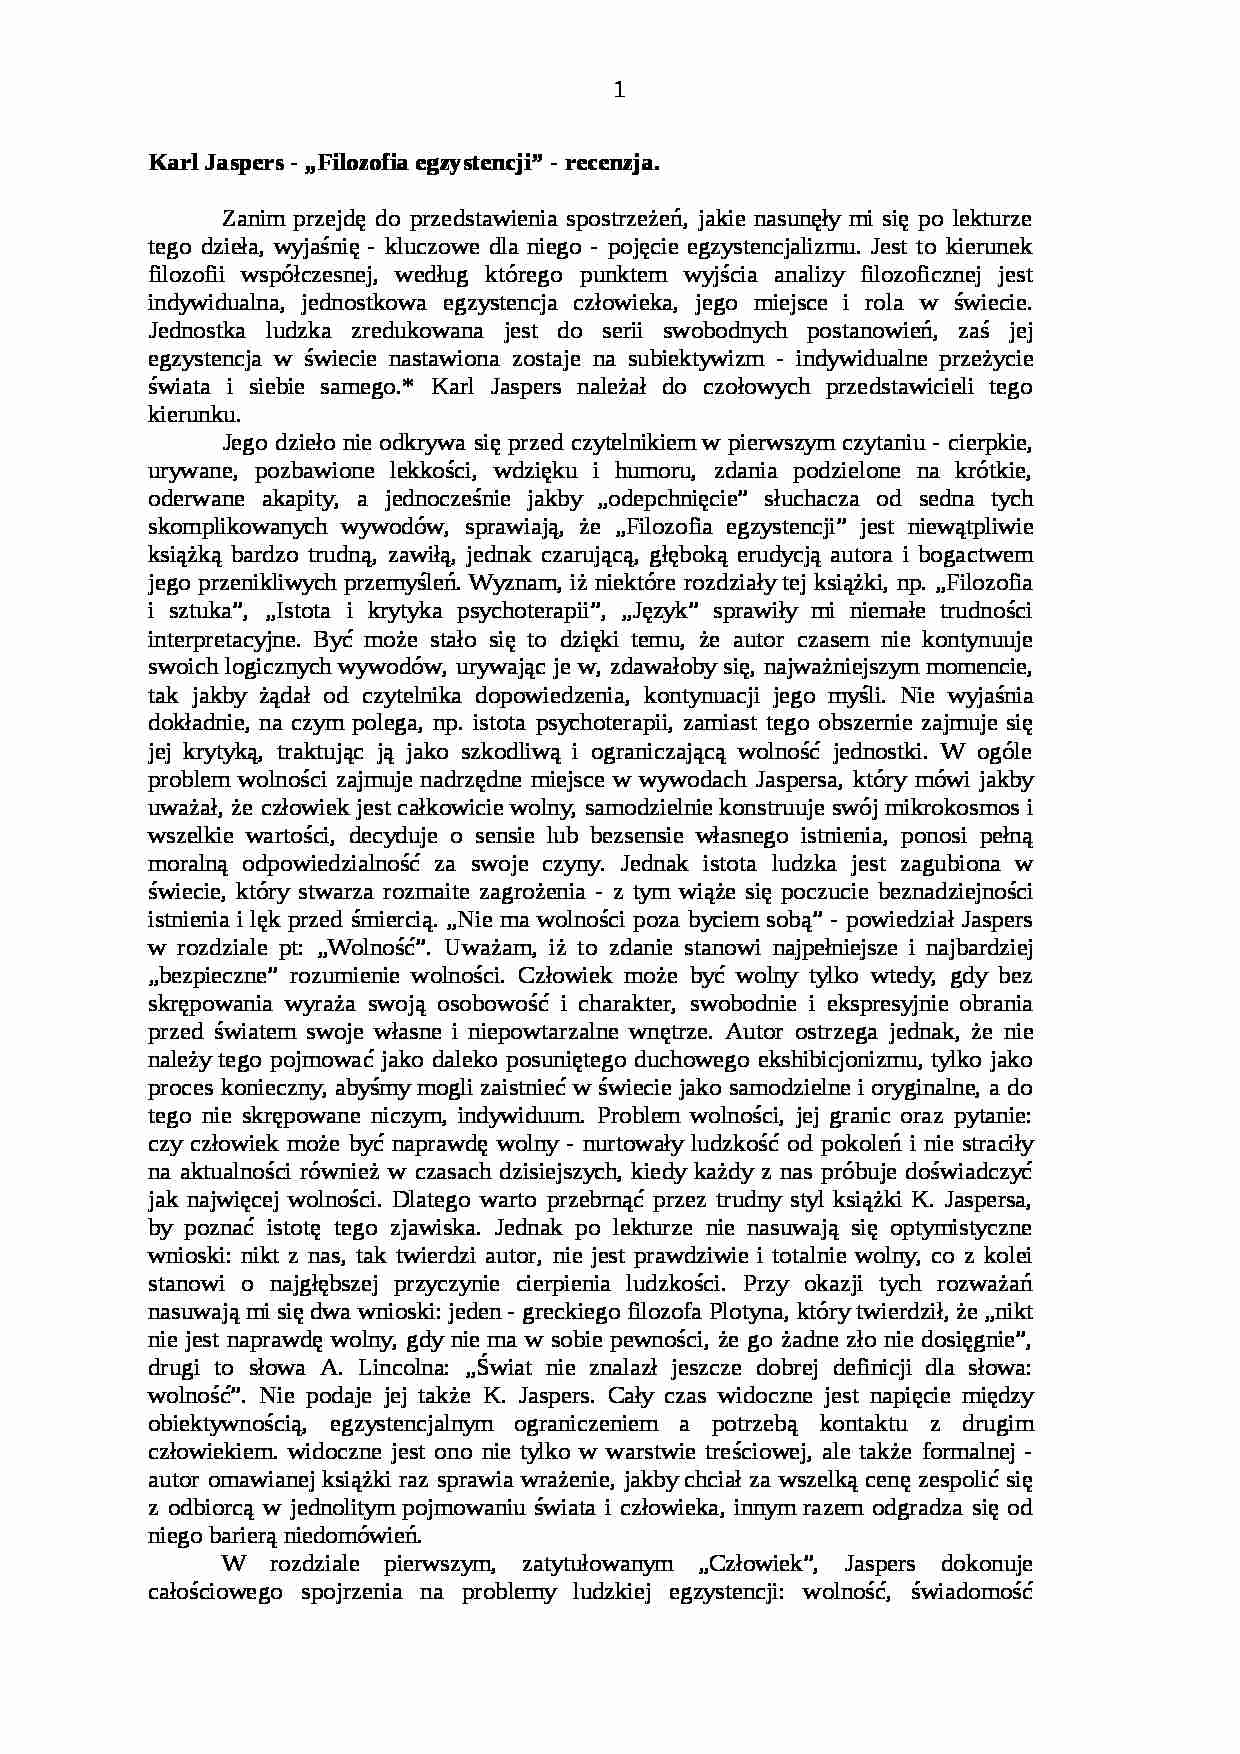 Karl Jaspers - „Filozofia egzystencji” - recenzja - strona 1